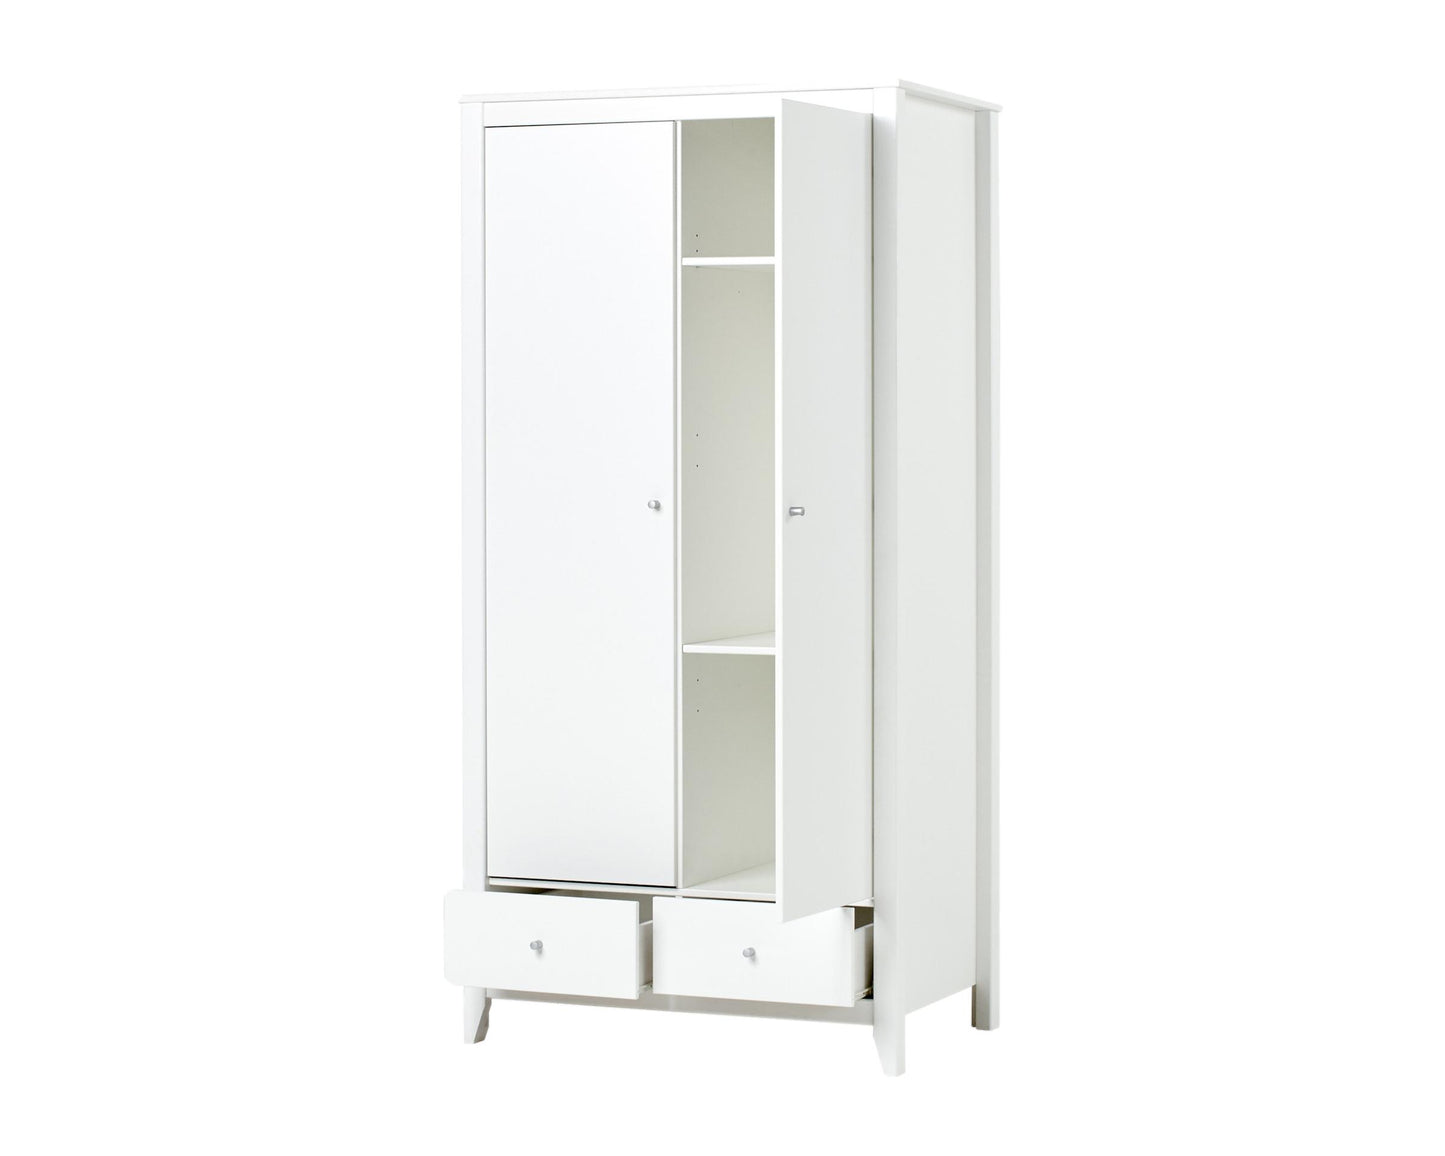 Wardrobe - 2 doors and 2 drawers - white